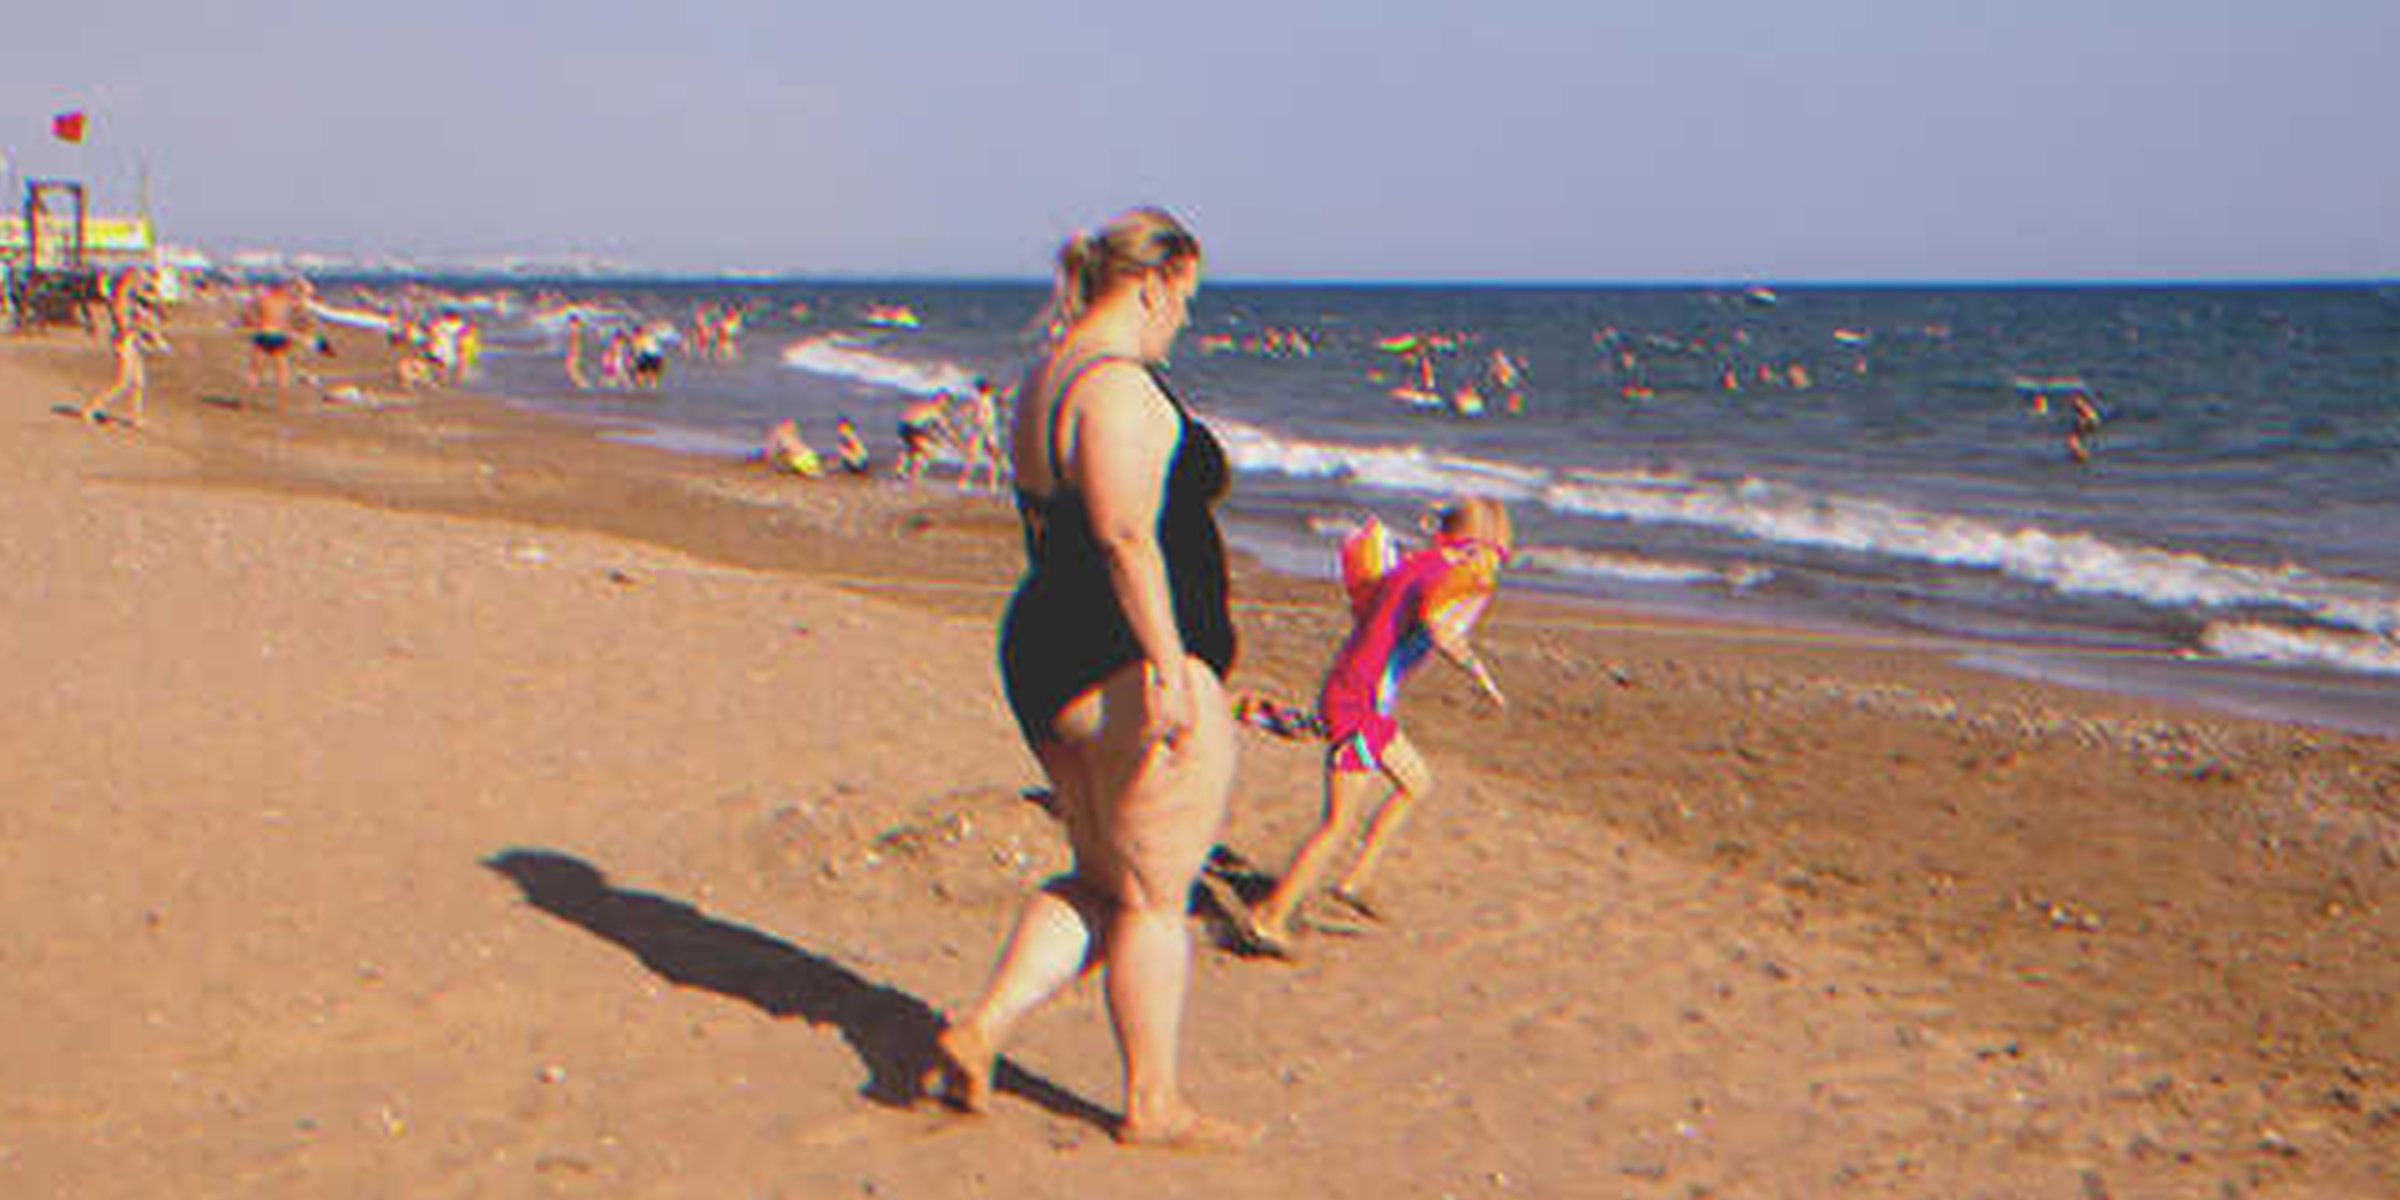 Plump woman on beach | Source: Shutterstock